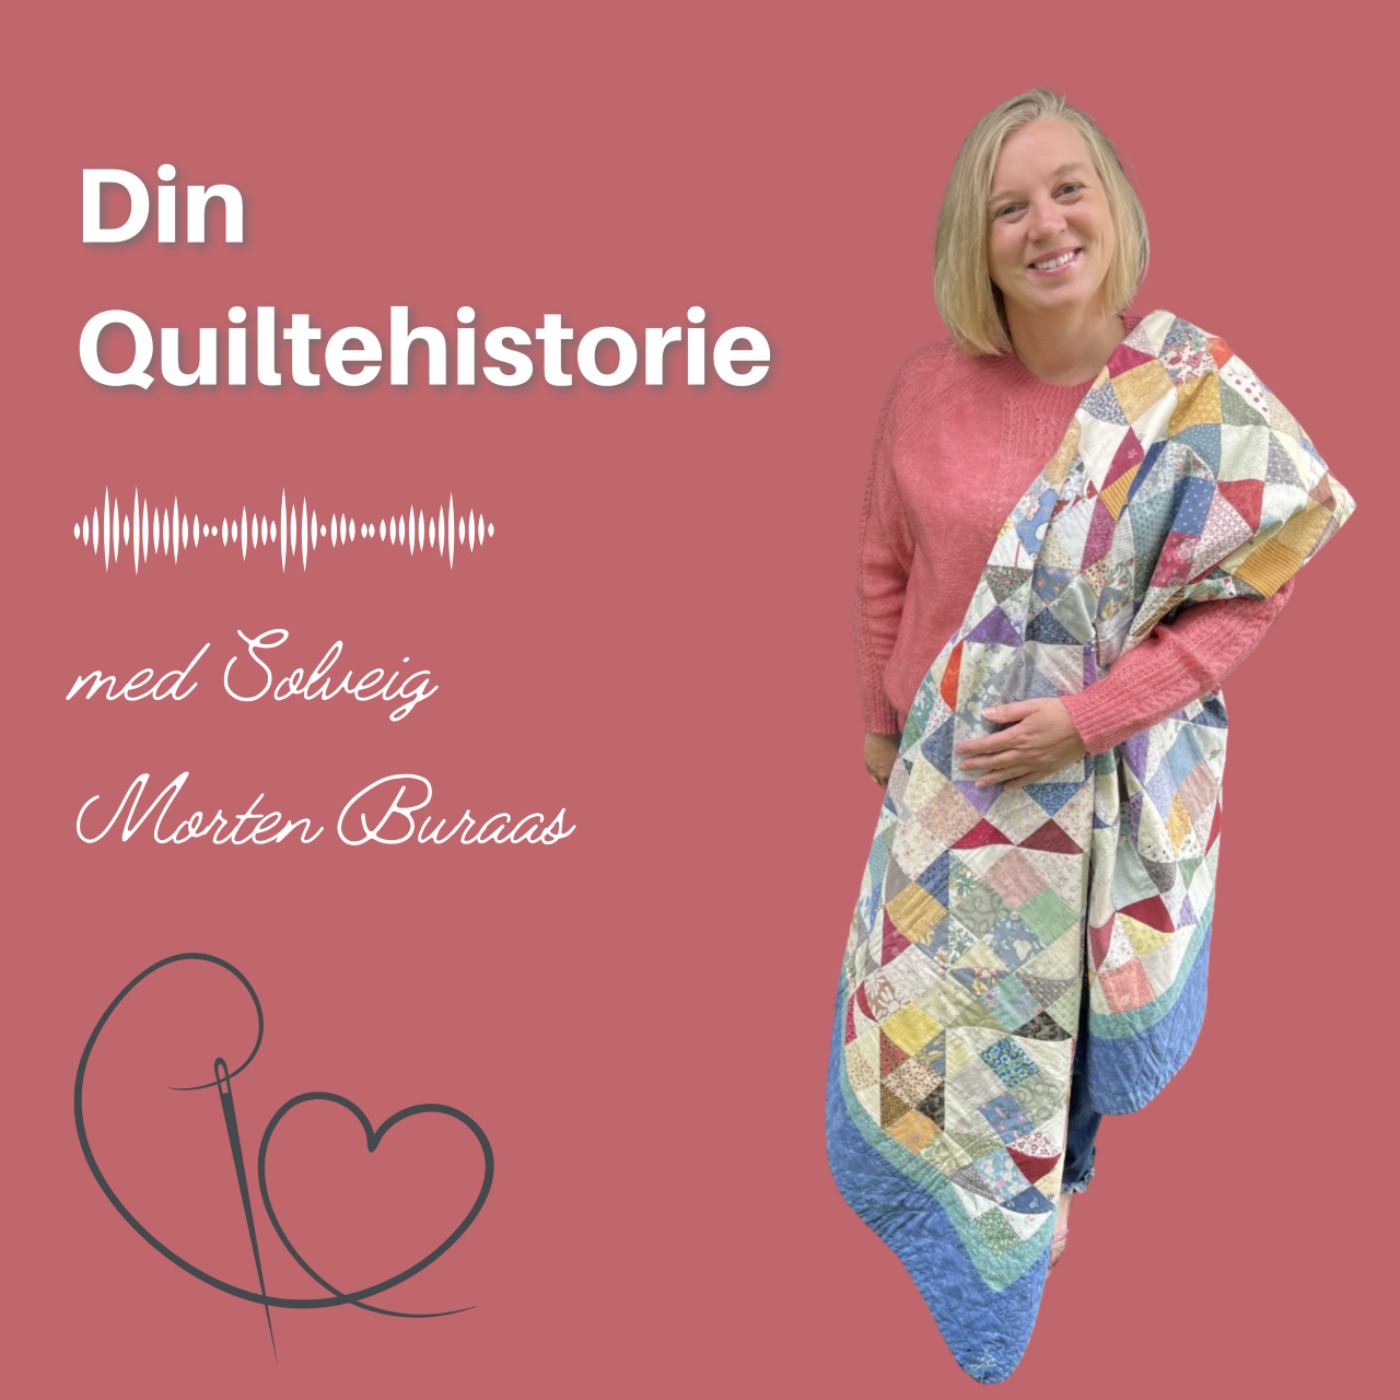 Velkommen til podcasten Din Quiltehistorie